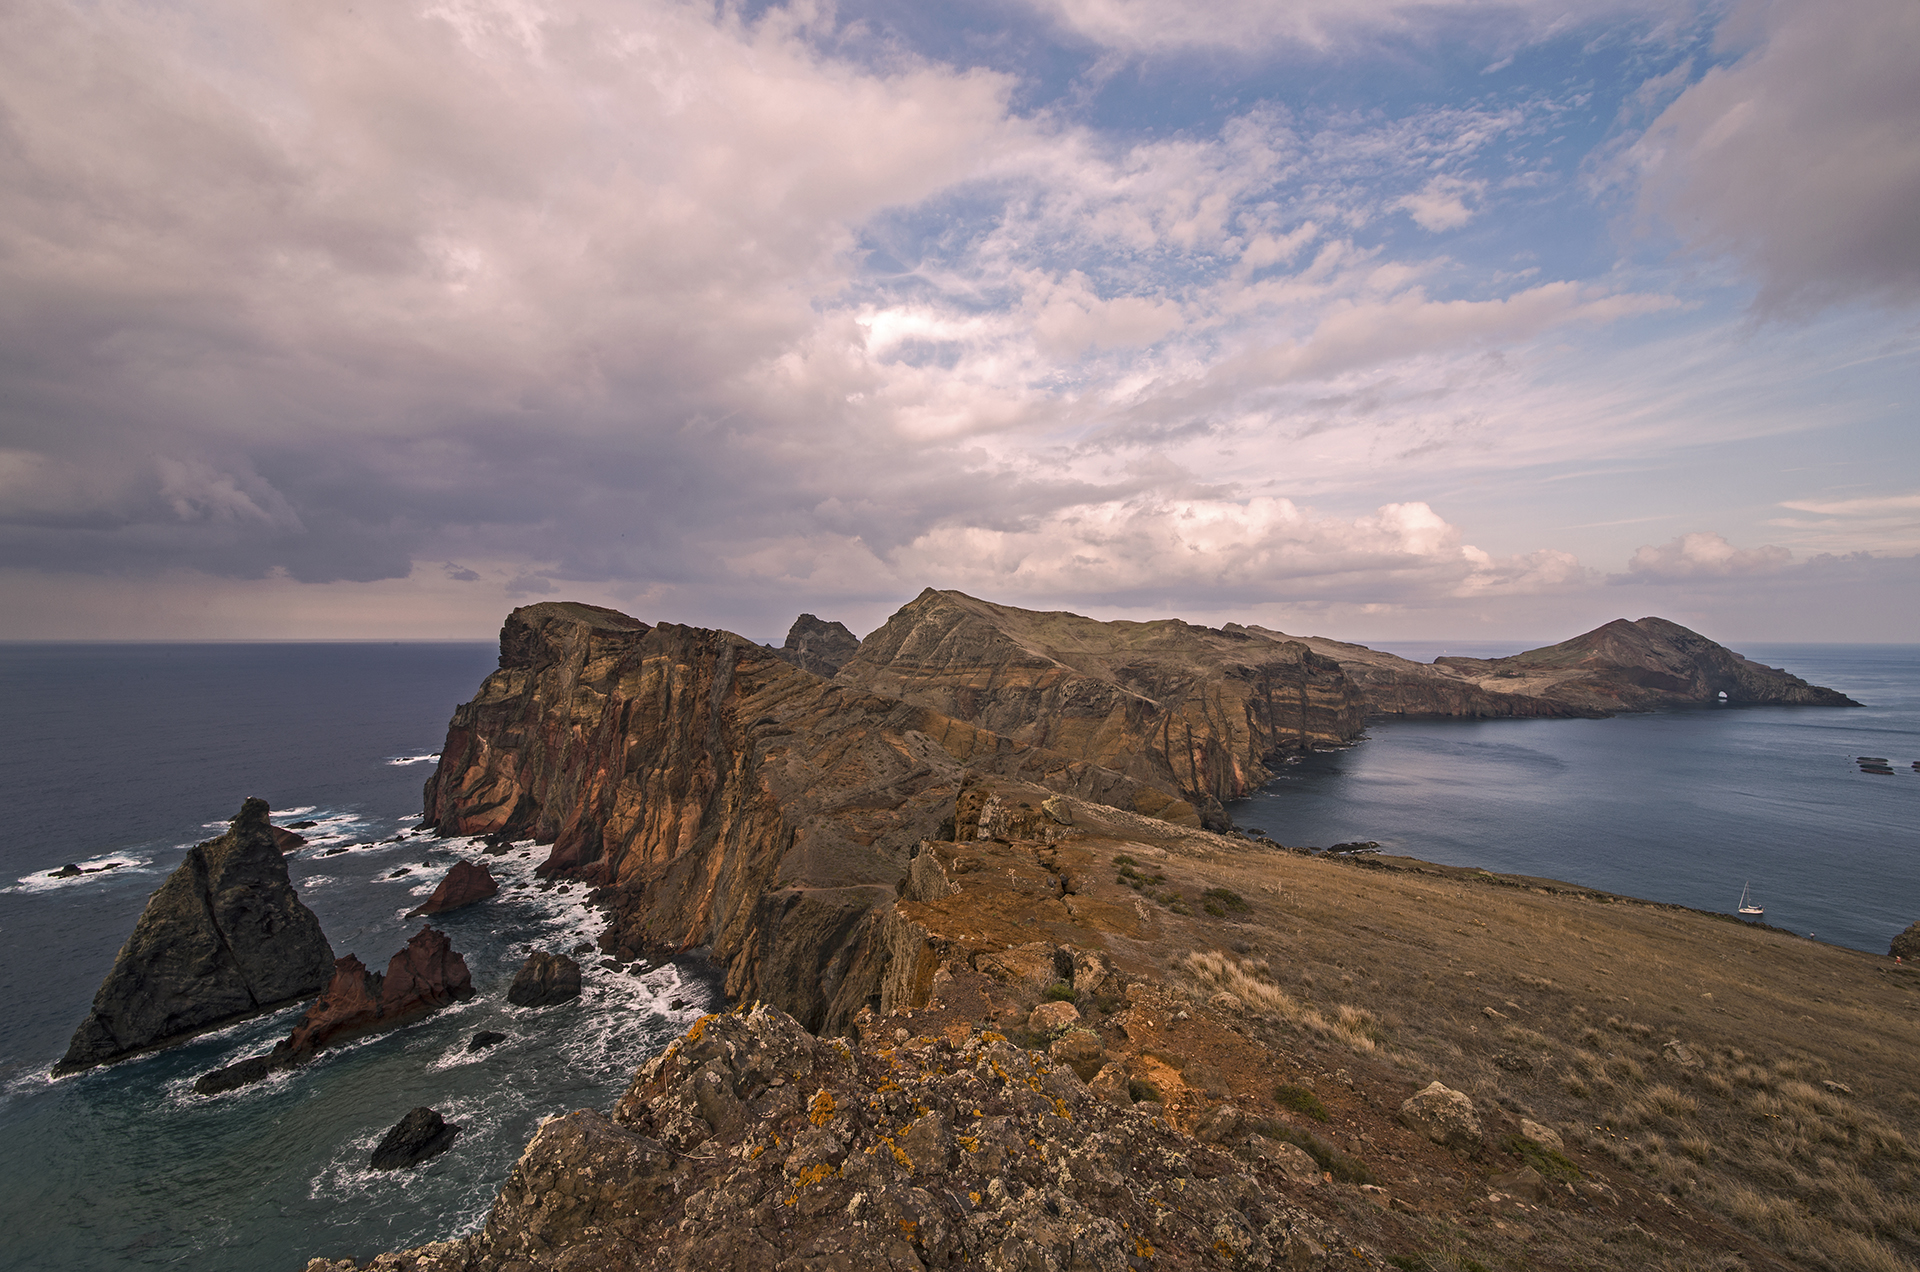 Capture of Ponta de São Lourenço, Madeira island. By Jorge Nelson Alves, CC-BY-SA-3.0.